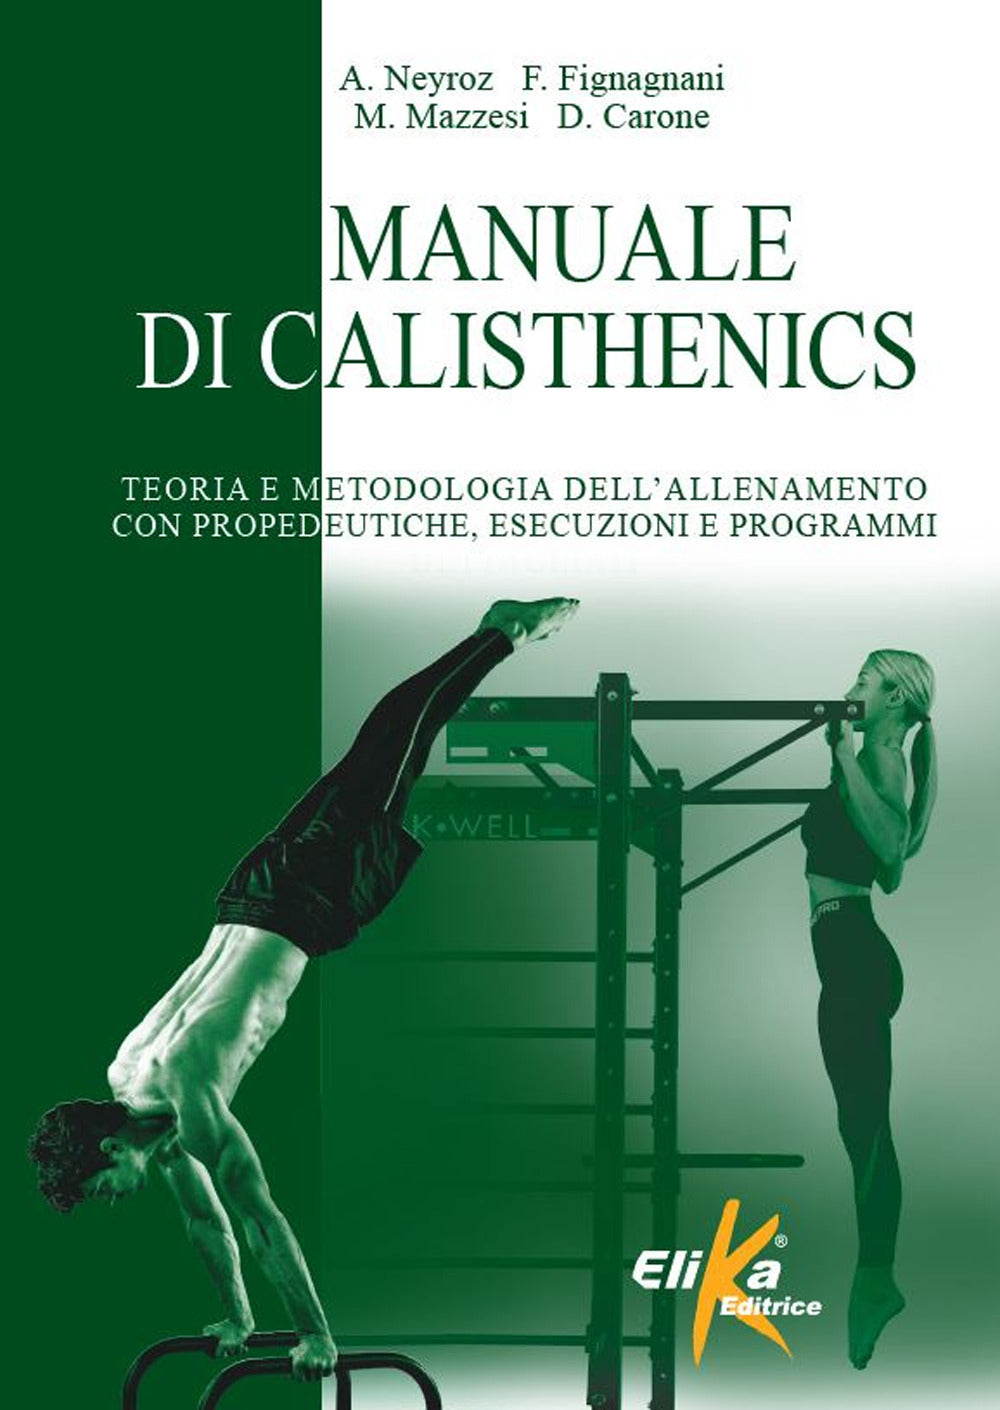 Manuale di calisthenics. Teoria e metodologia dell'allenamento con propedeutiche, esecuzioni e programmi.